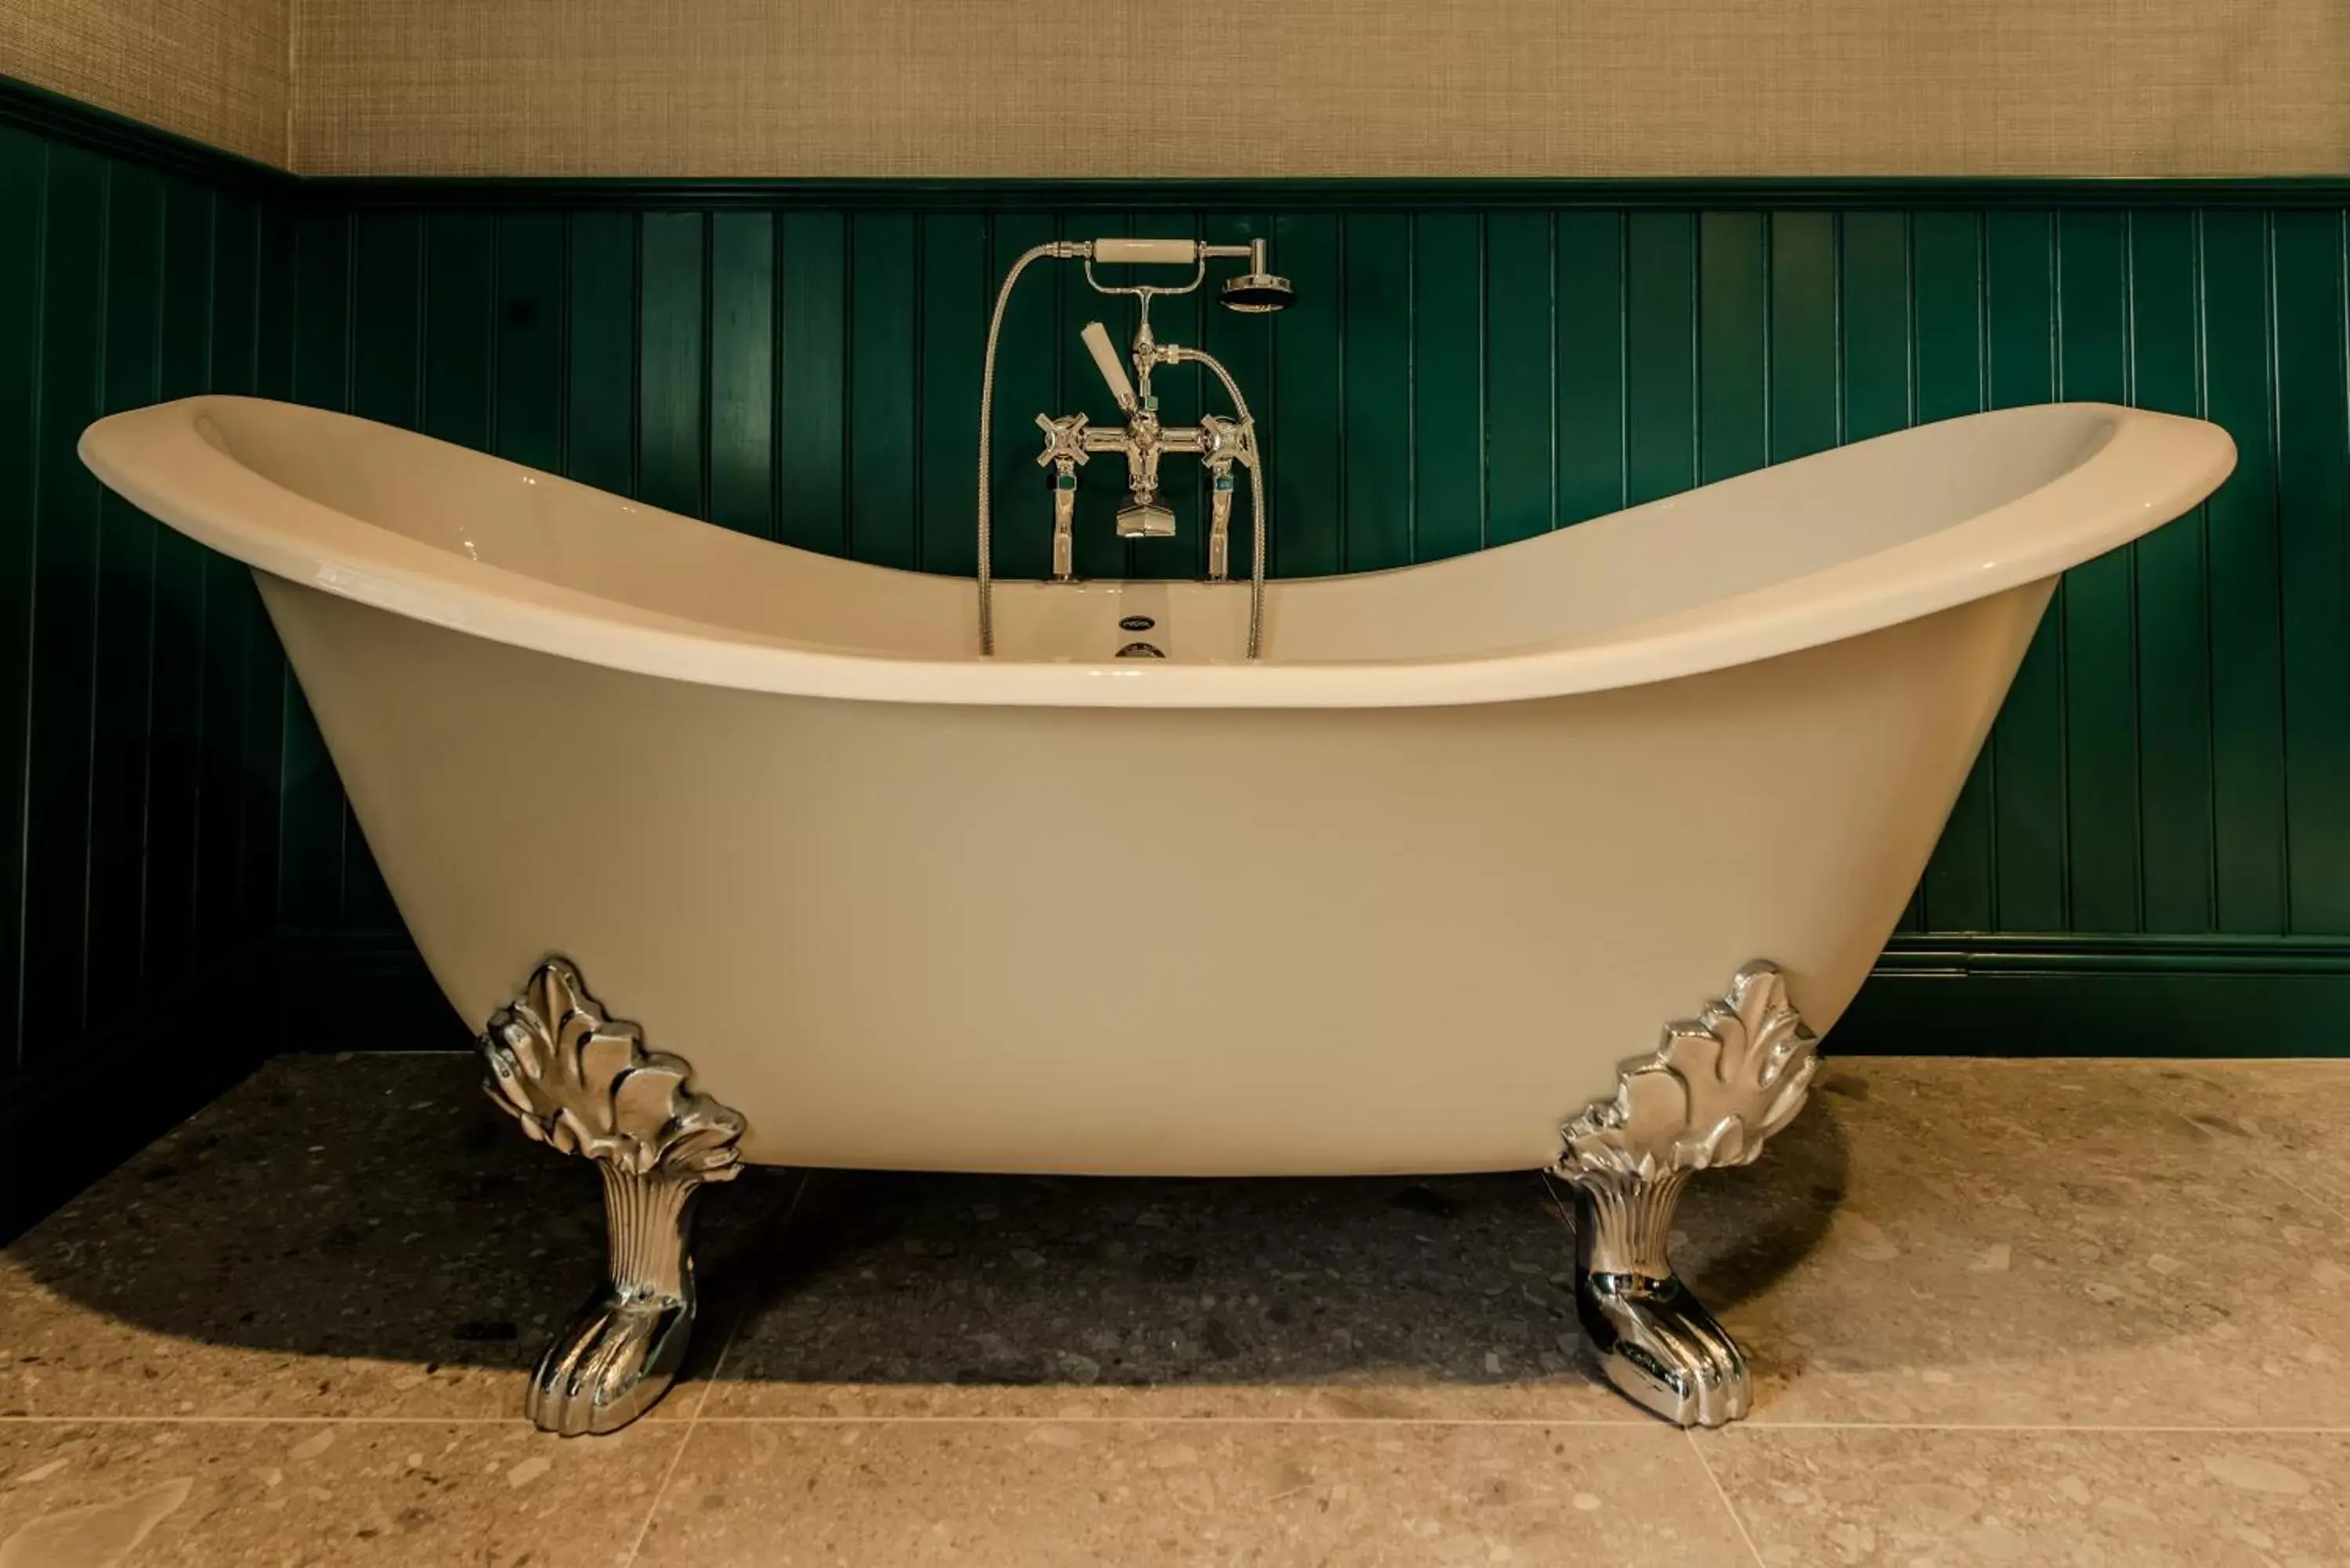 Bathroom in Cahernane House Hotel